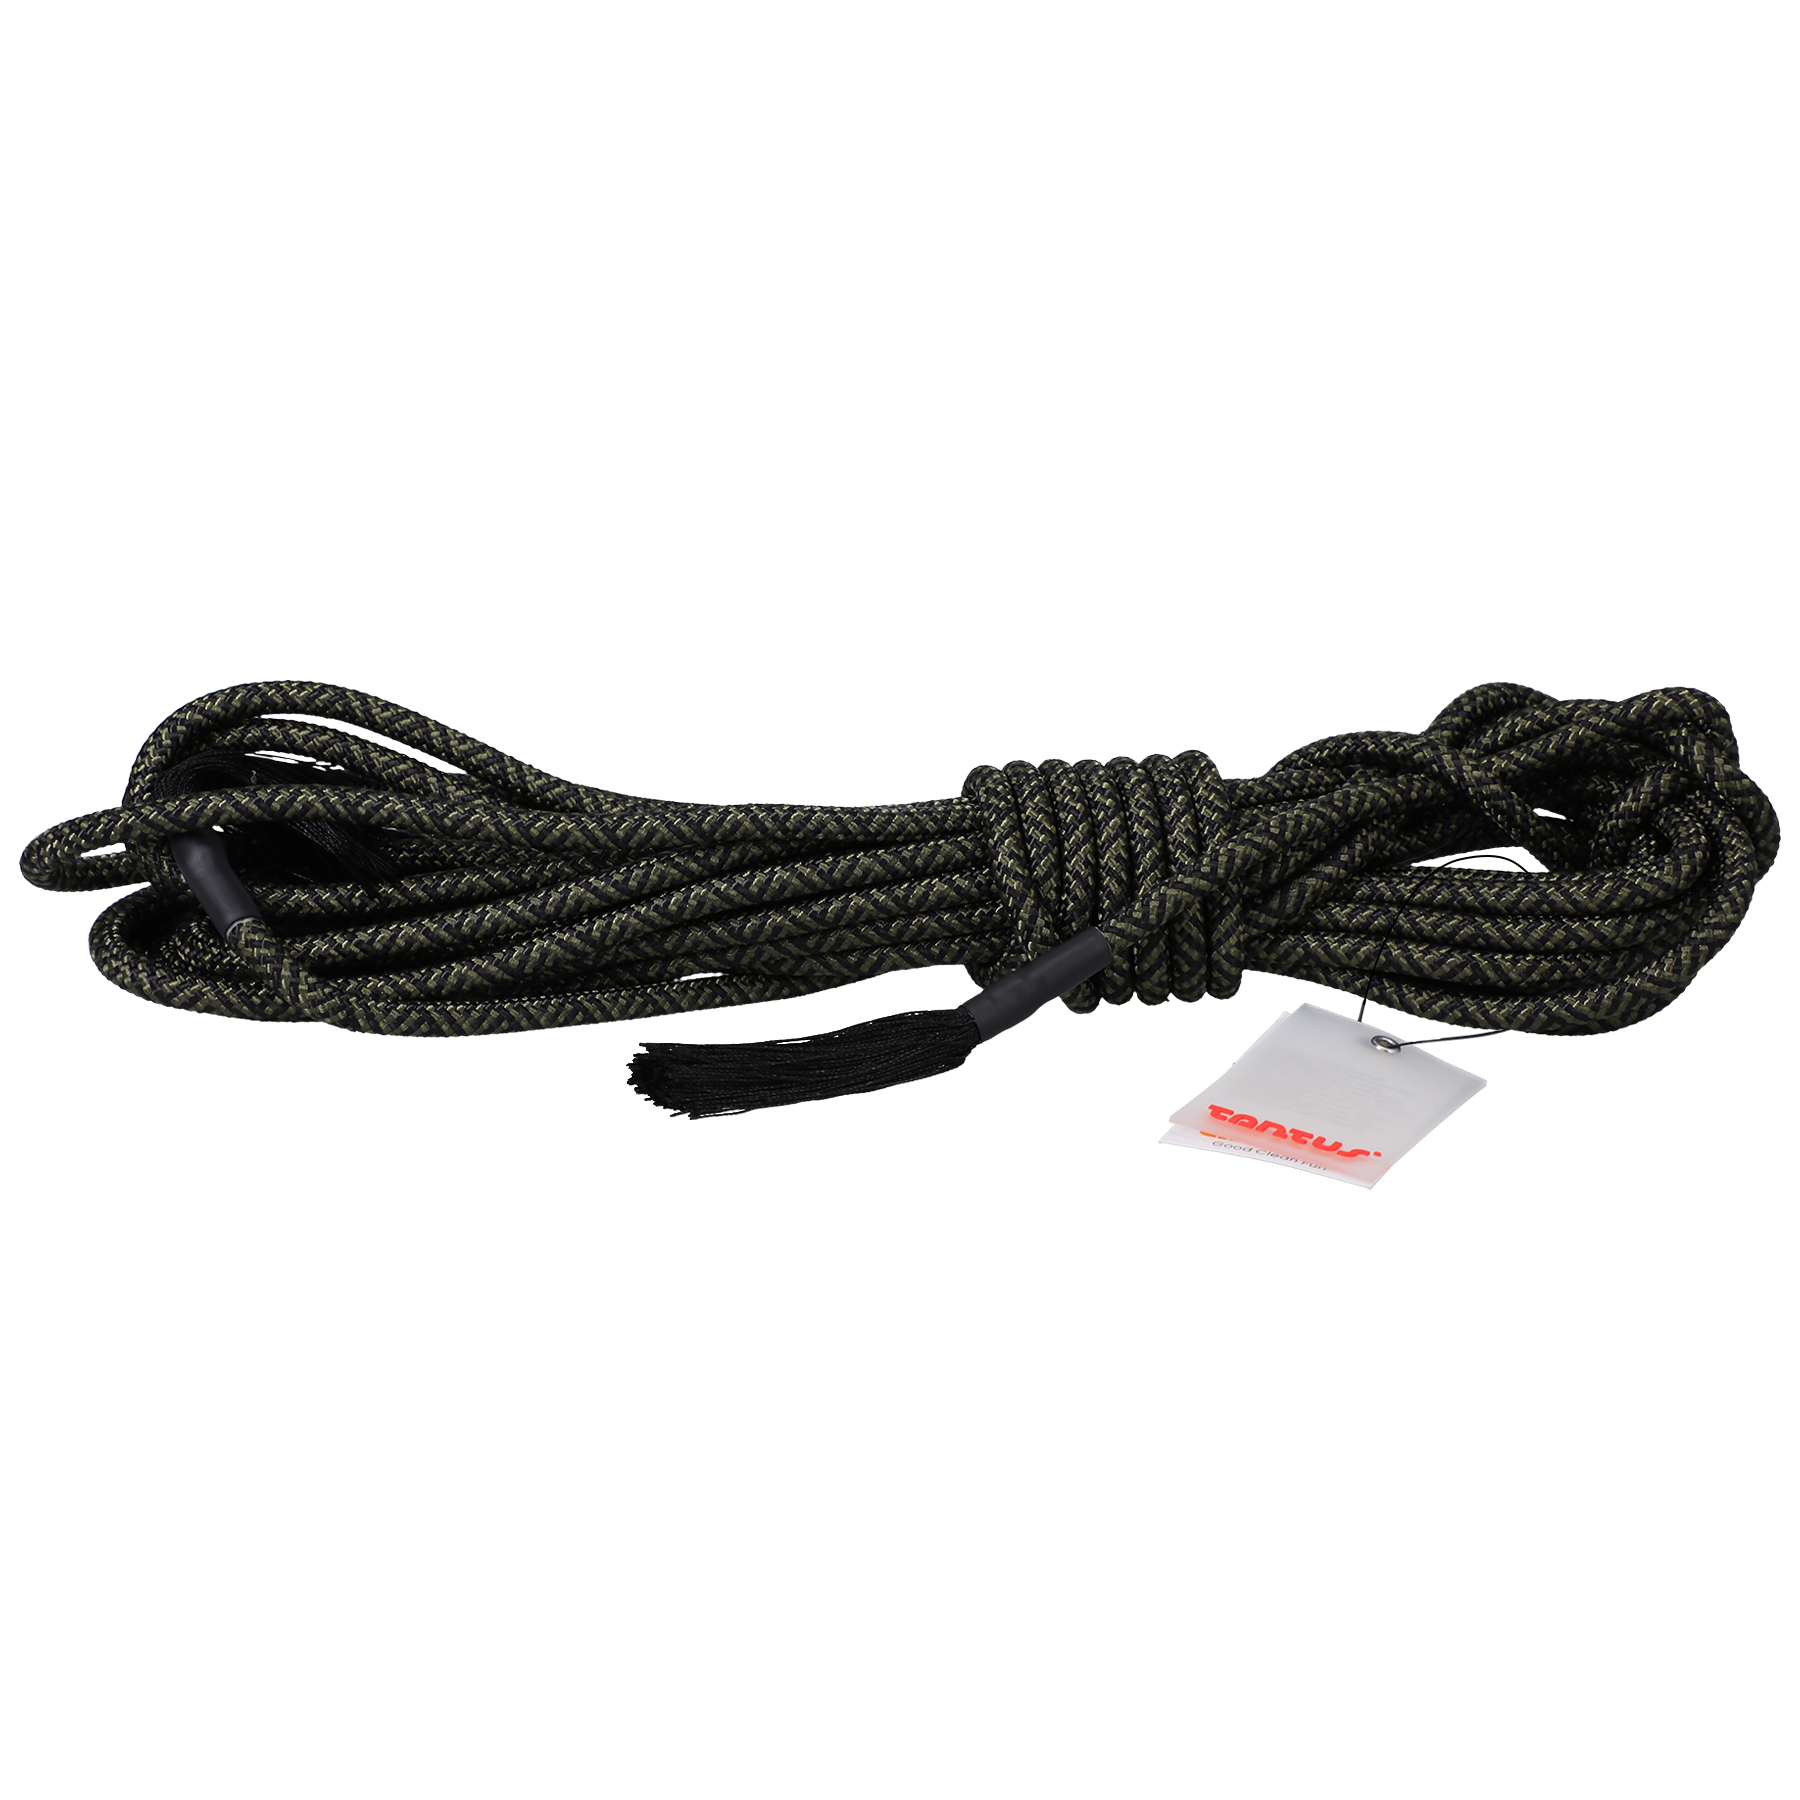 Rope - 30 Feet - Olive, Onyx